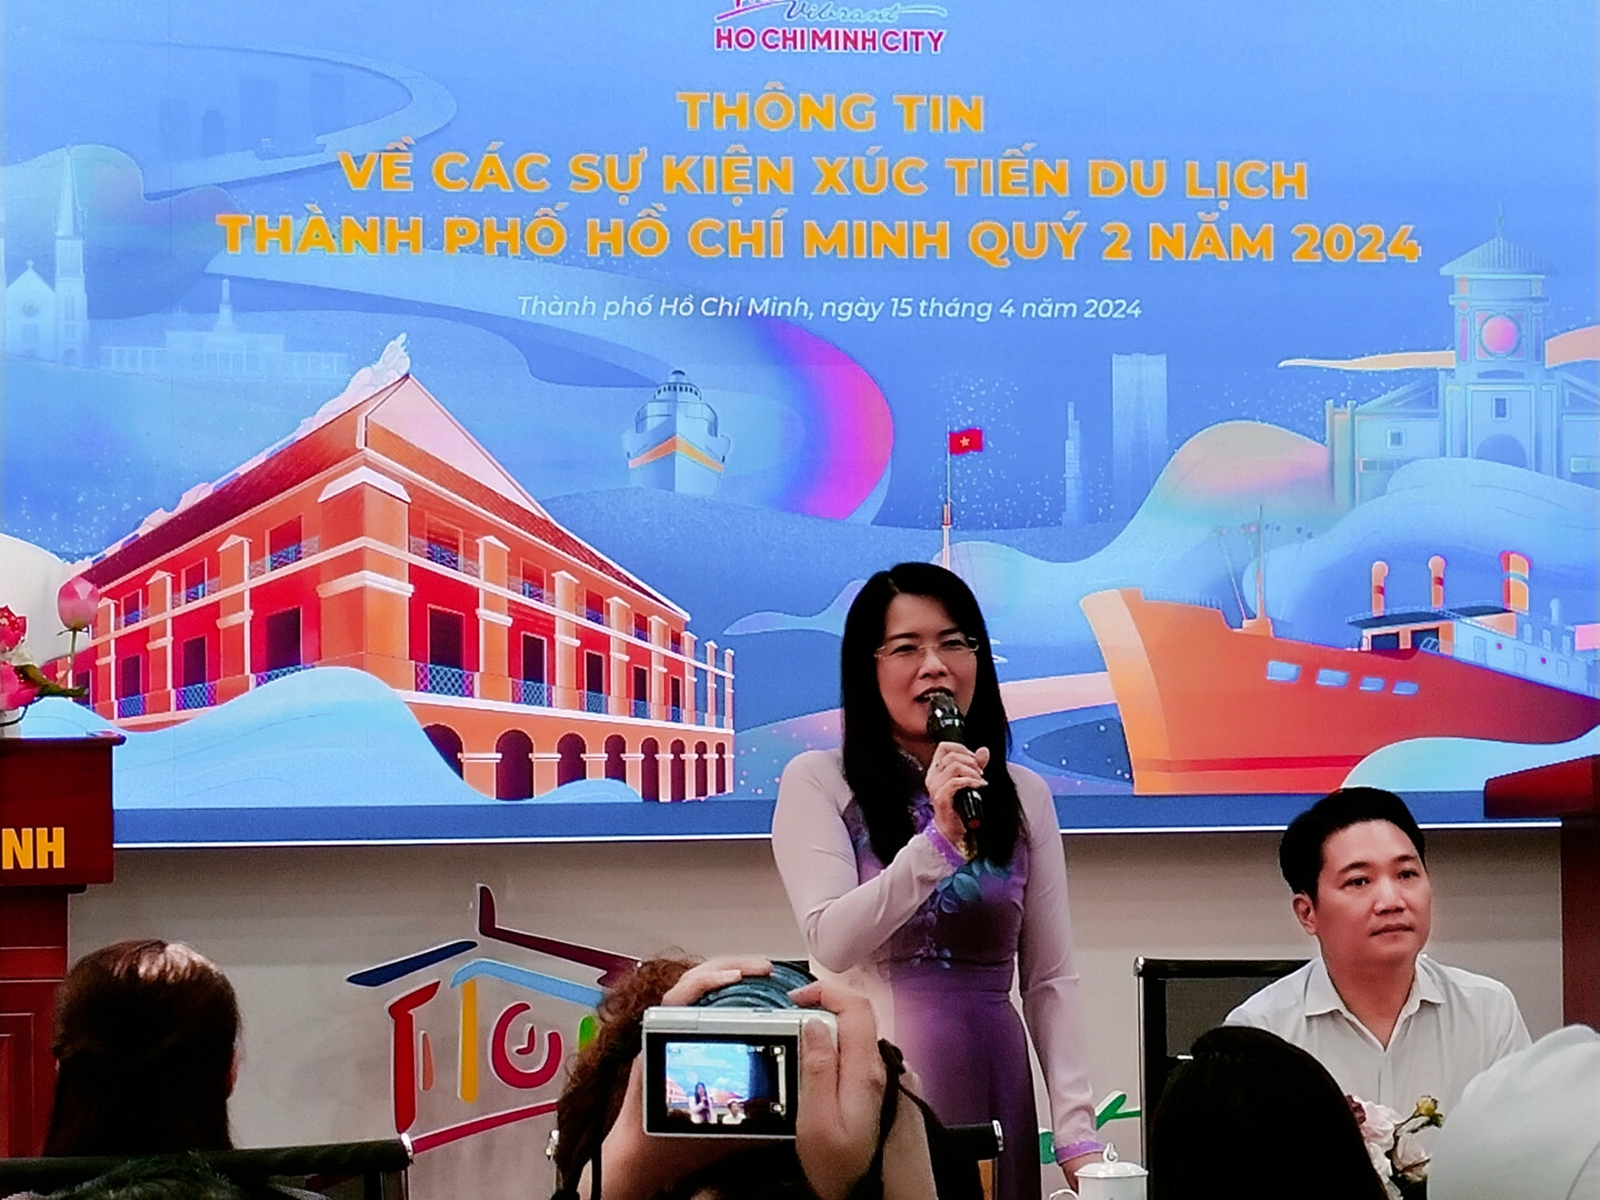 Bà Nguyễn Thị Ánh Hoa - Giám đốc Sở Du lịch TP. Hồ Chí Minh thông tin về Lễ hội Sông nước Thành phố Hồ Chí Minh lần thứ 2